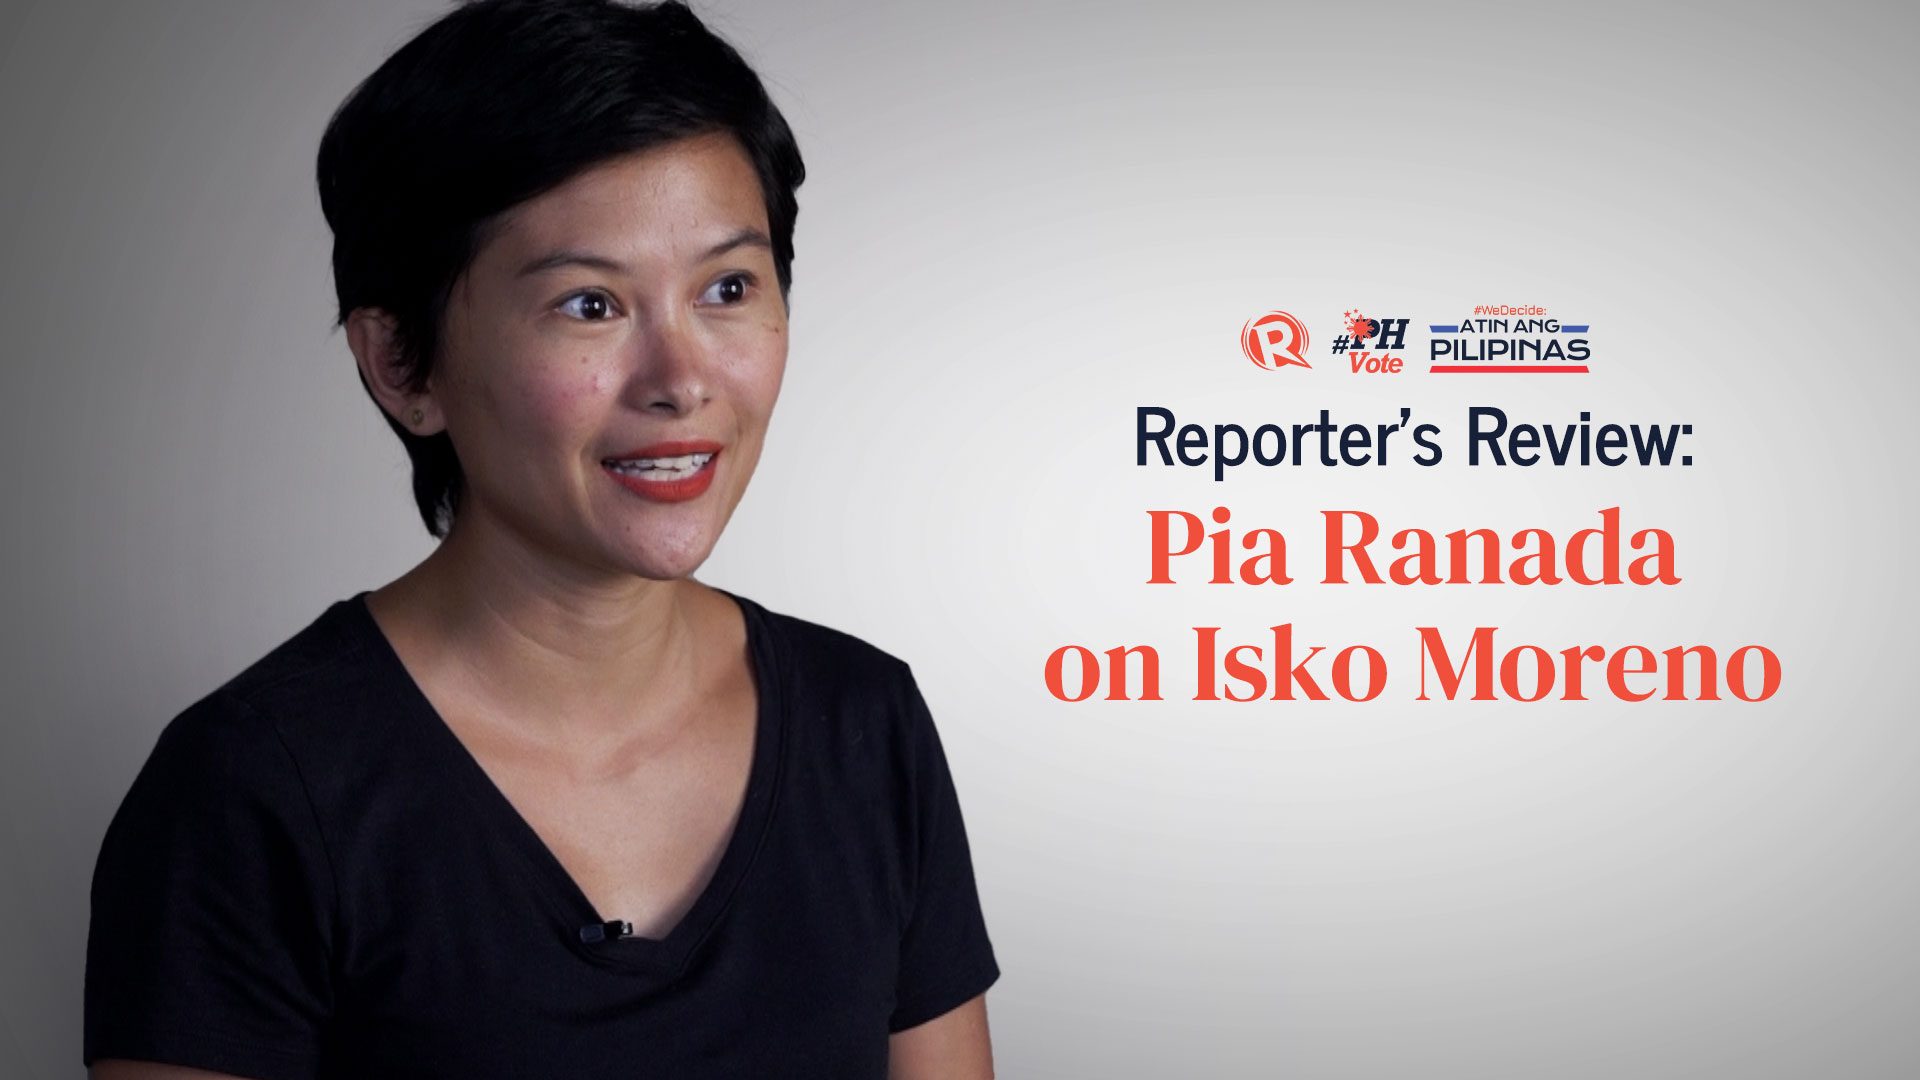 Reporter’s Review: Pia Ranada on Isko Moreno